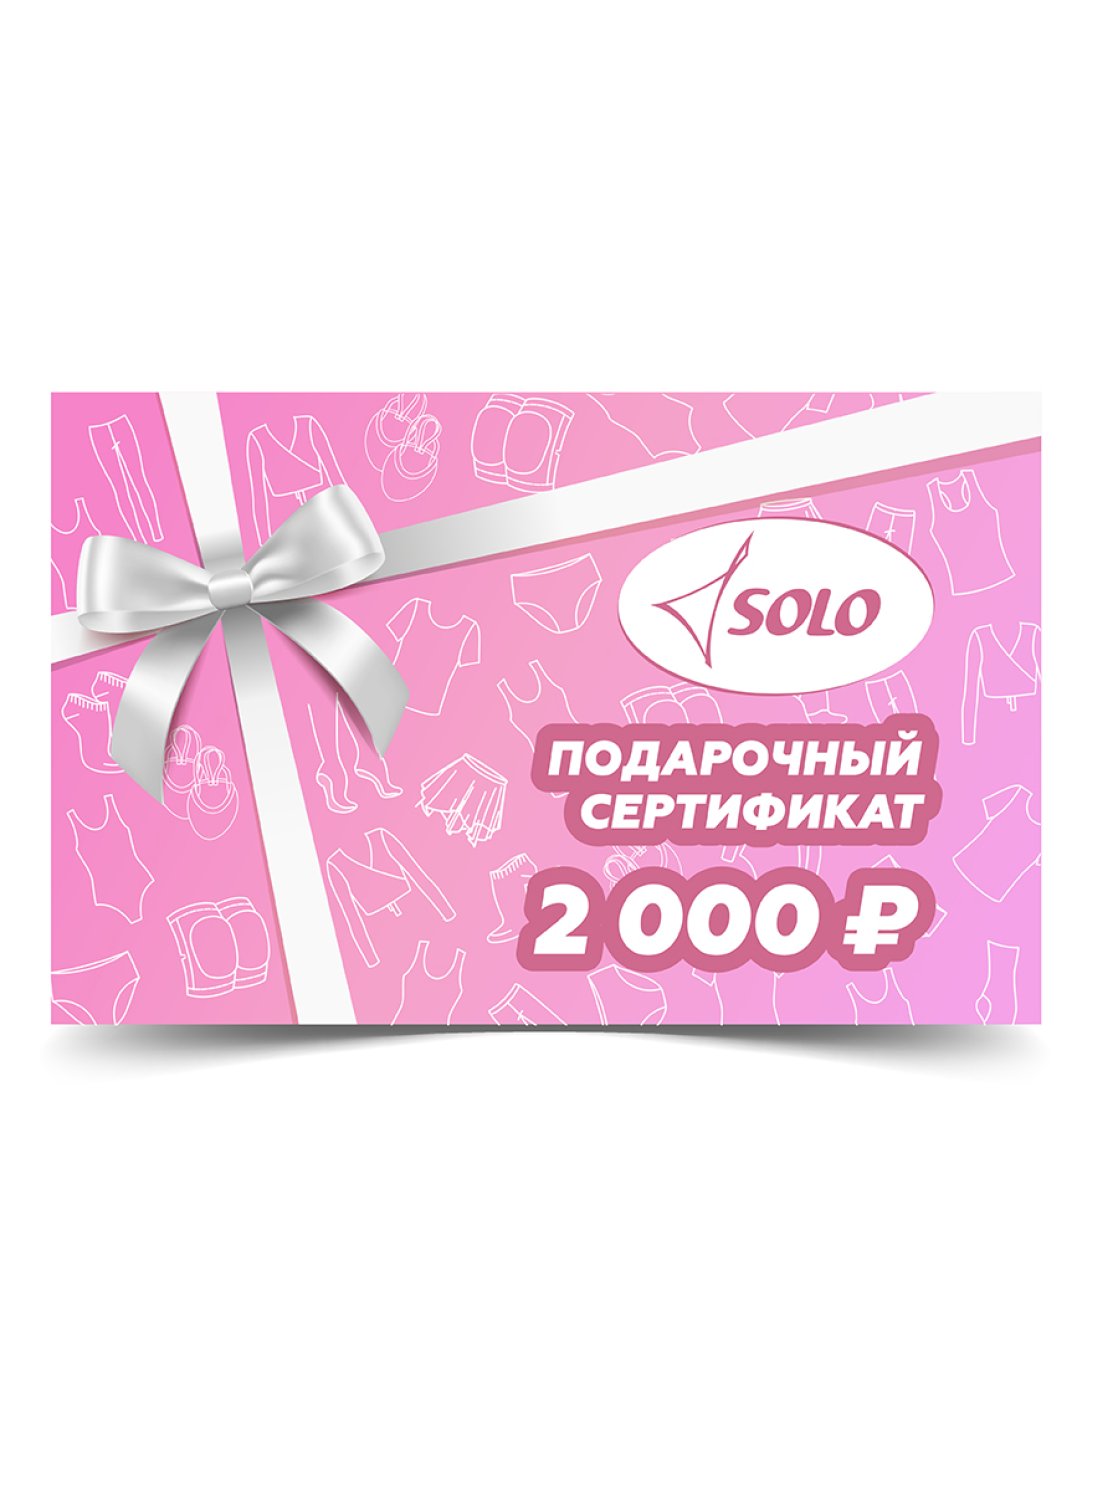 Электронный подарочный сертификат номиналом 2 000 рублей